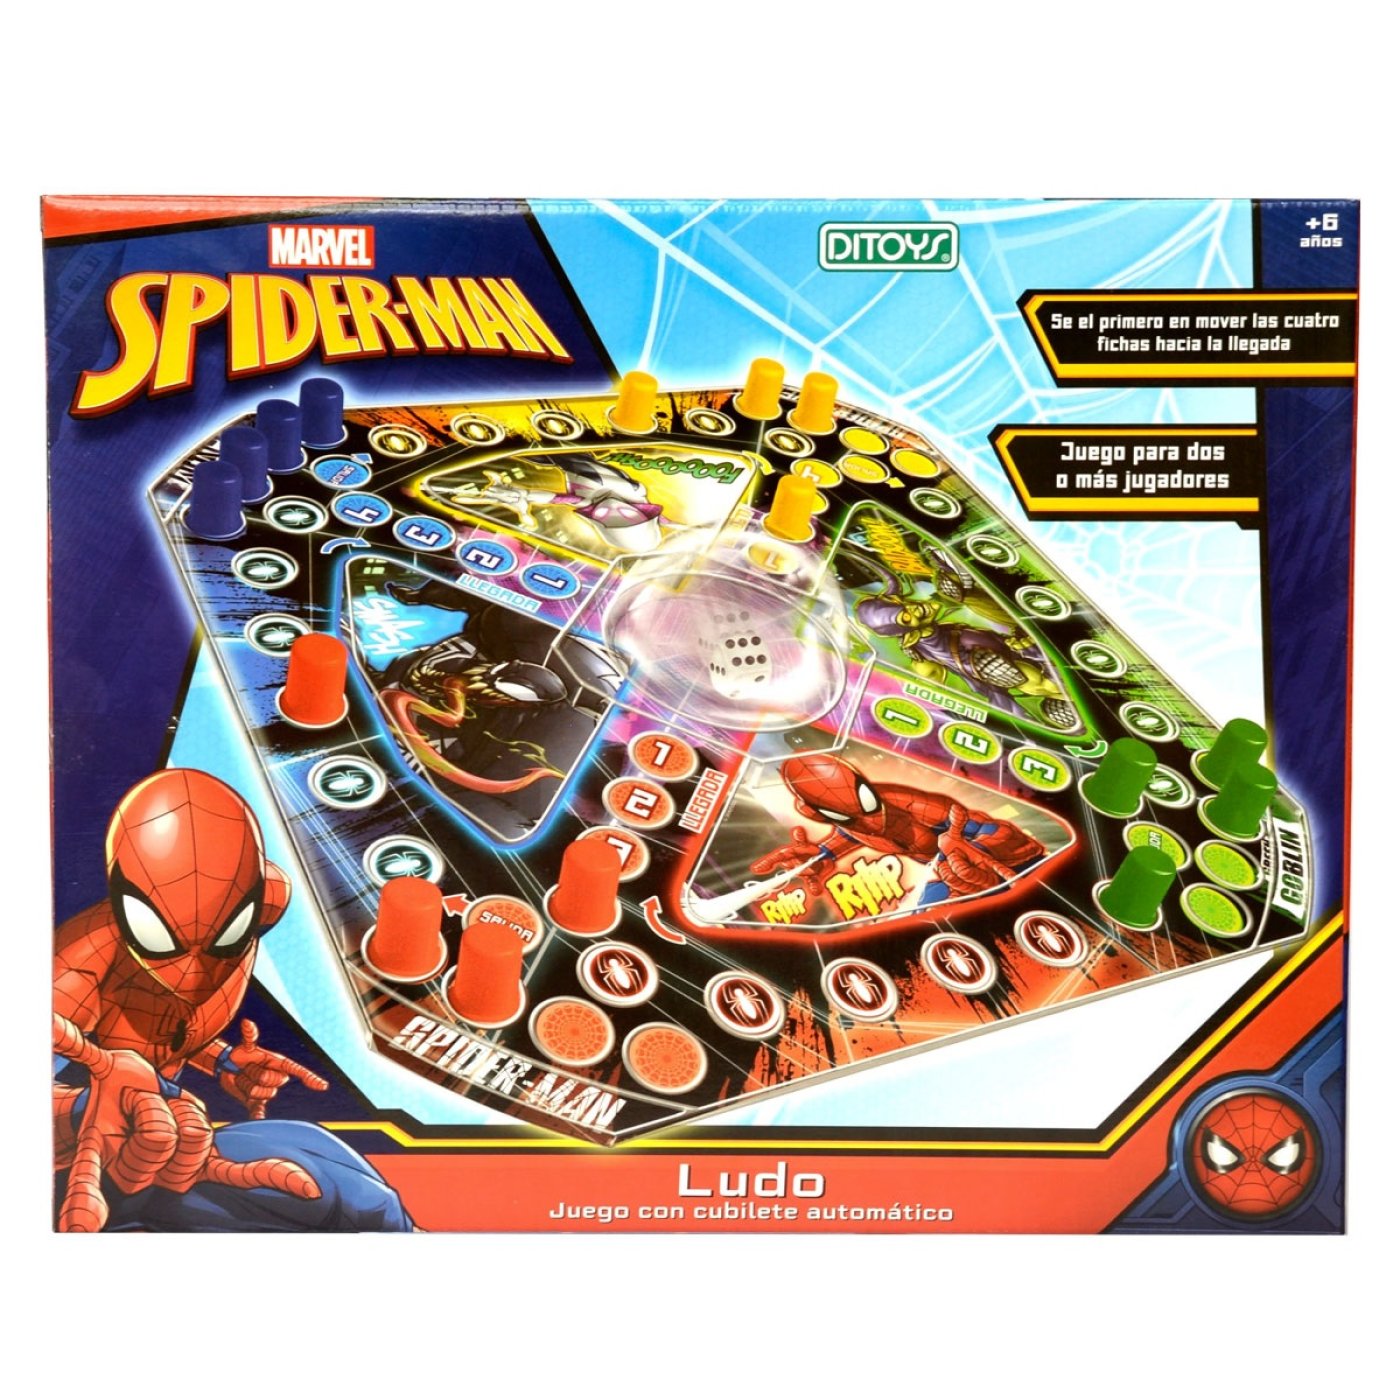 Juego Ludo C/cubile Automático Spiderman Marvel Ditoys